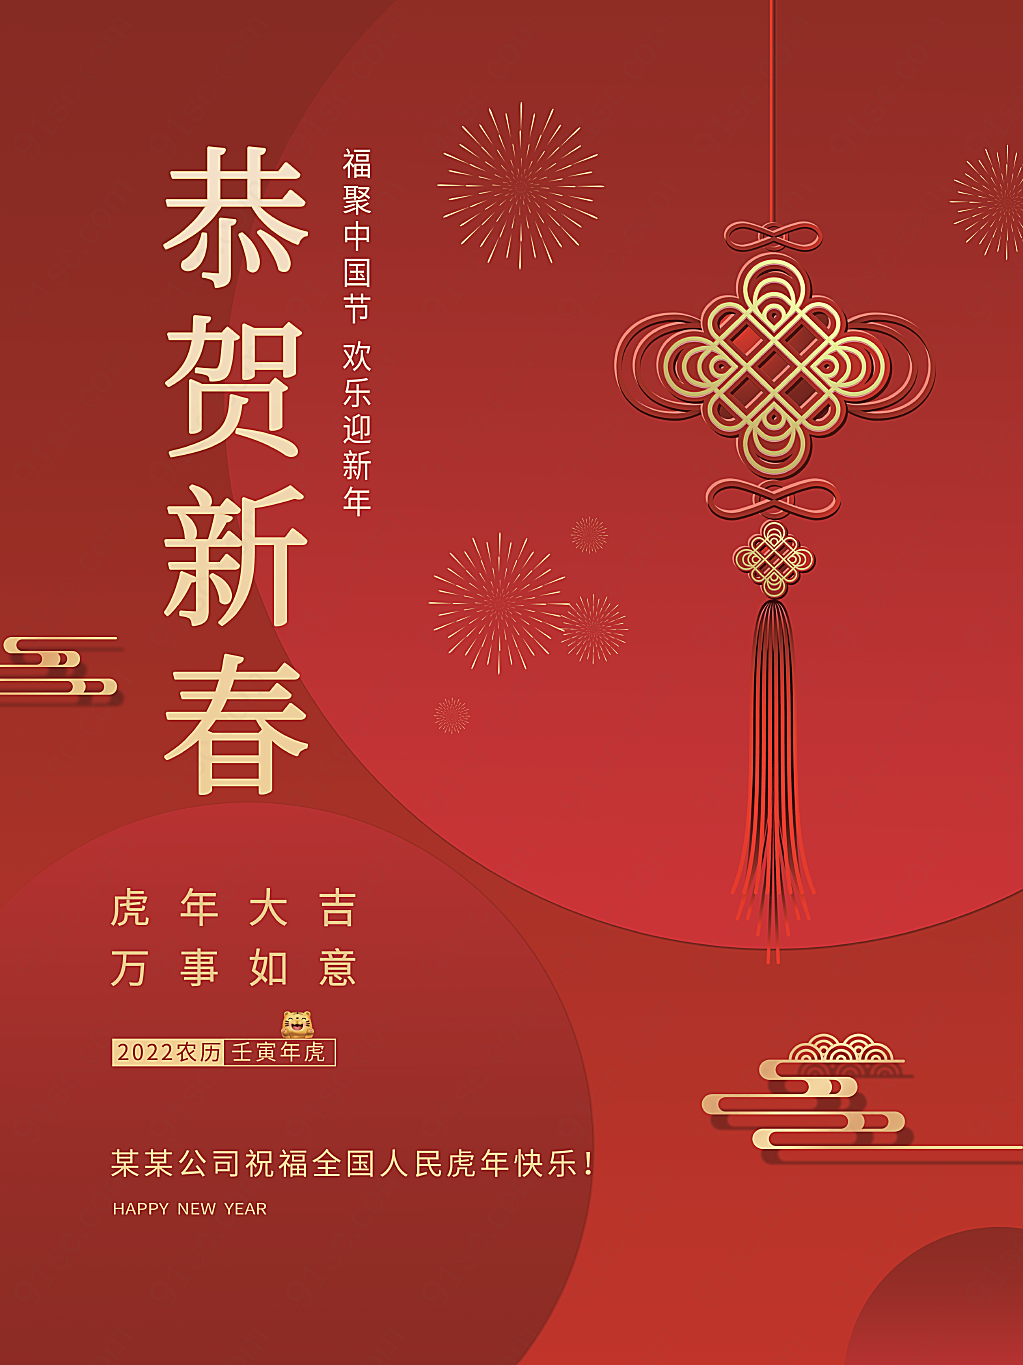 中国结恭贺新春春节节日宣传节日海报